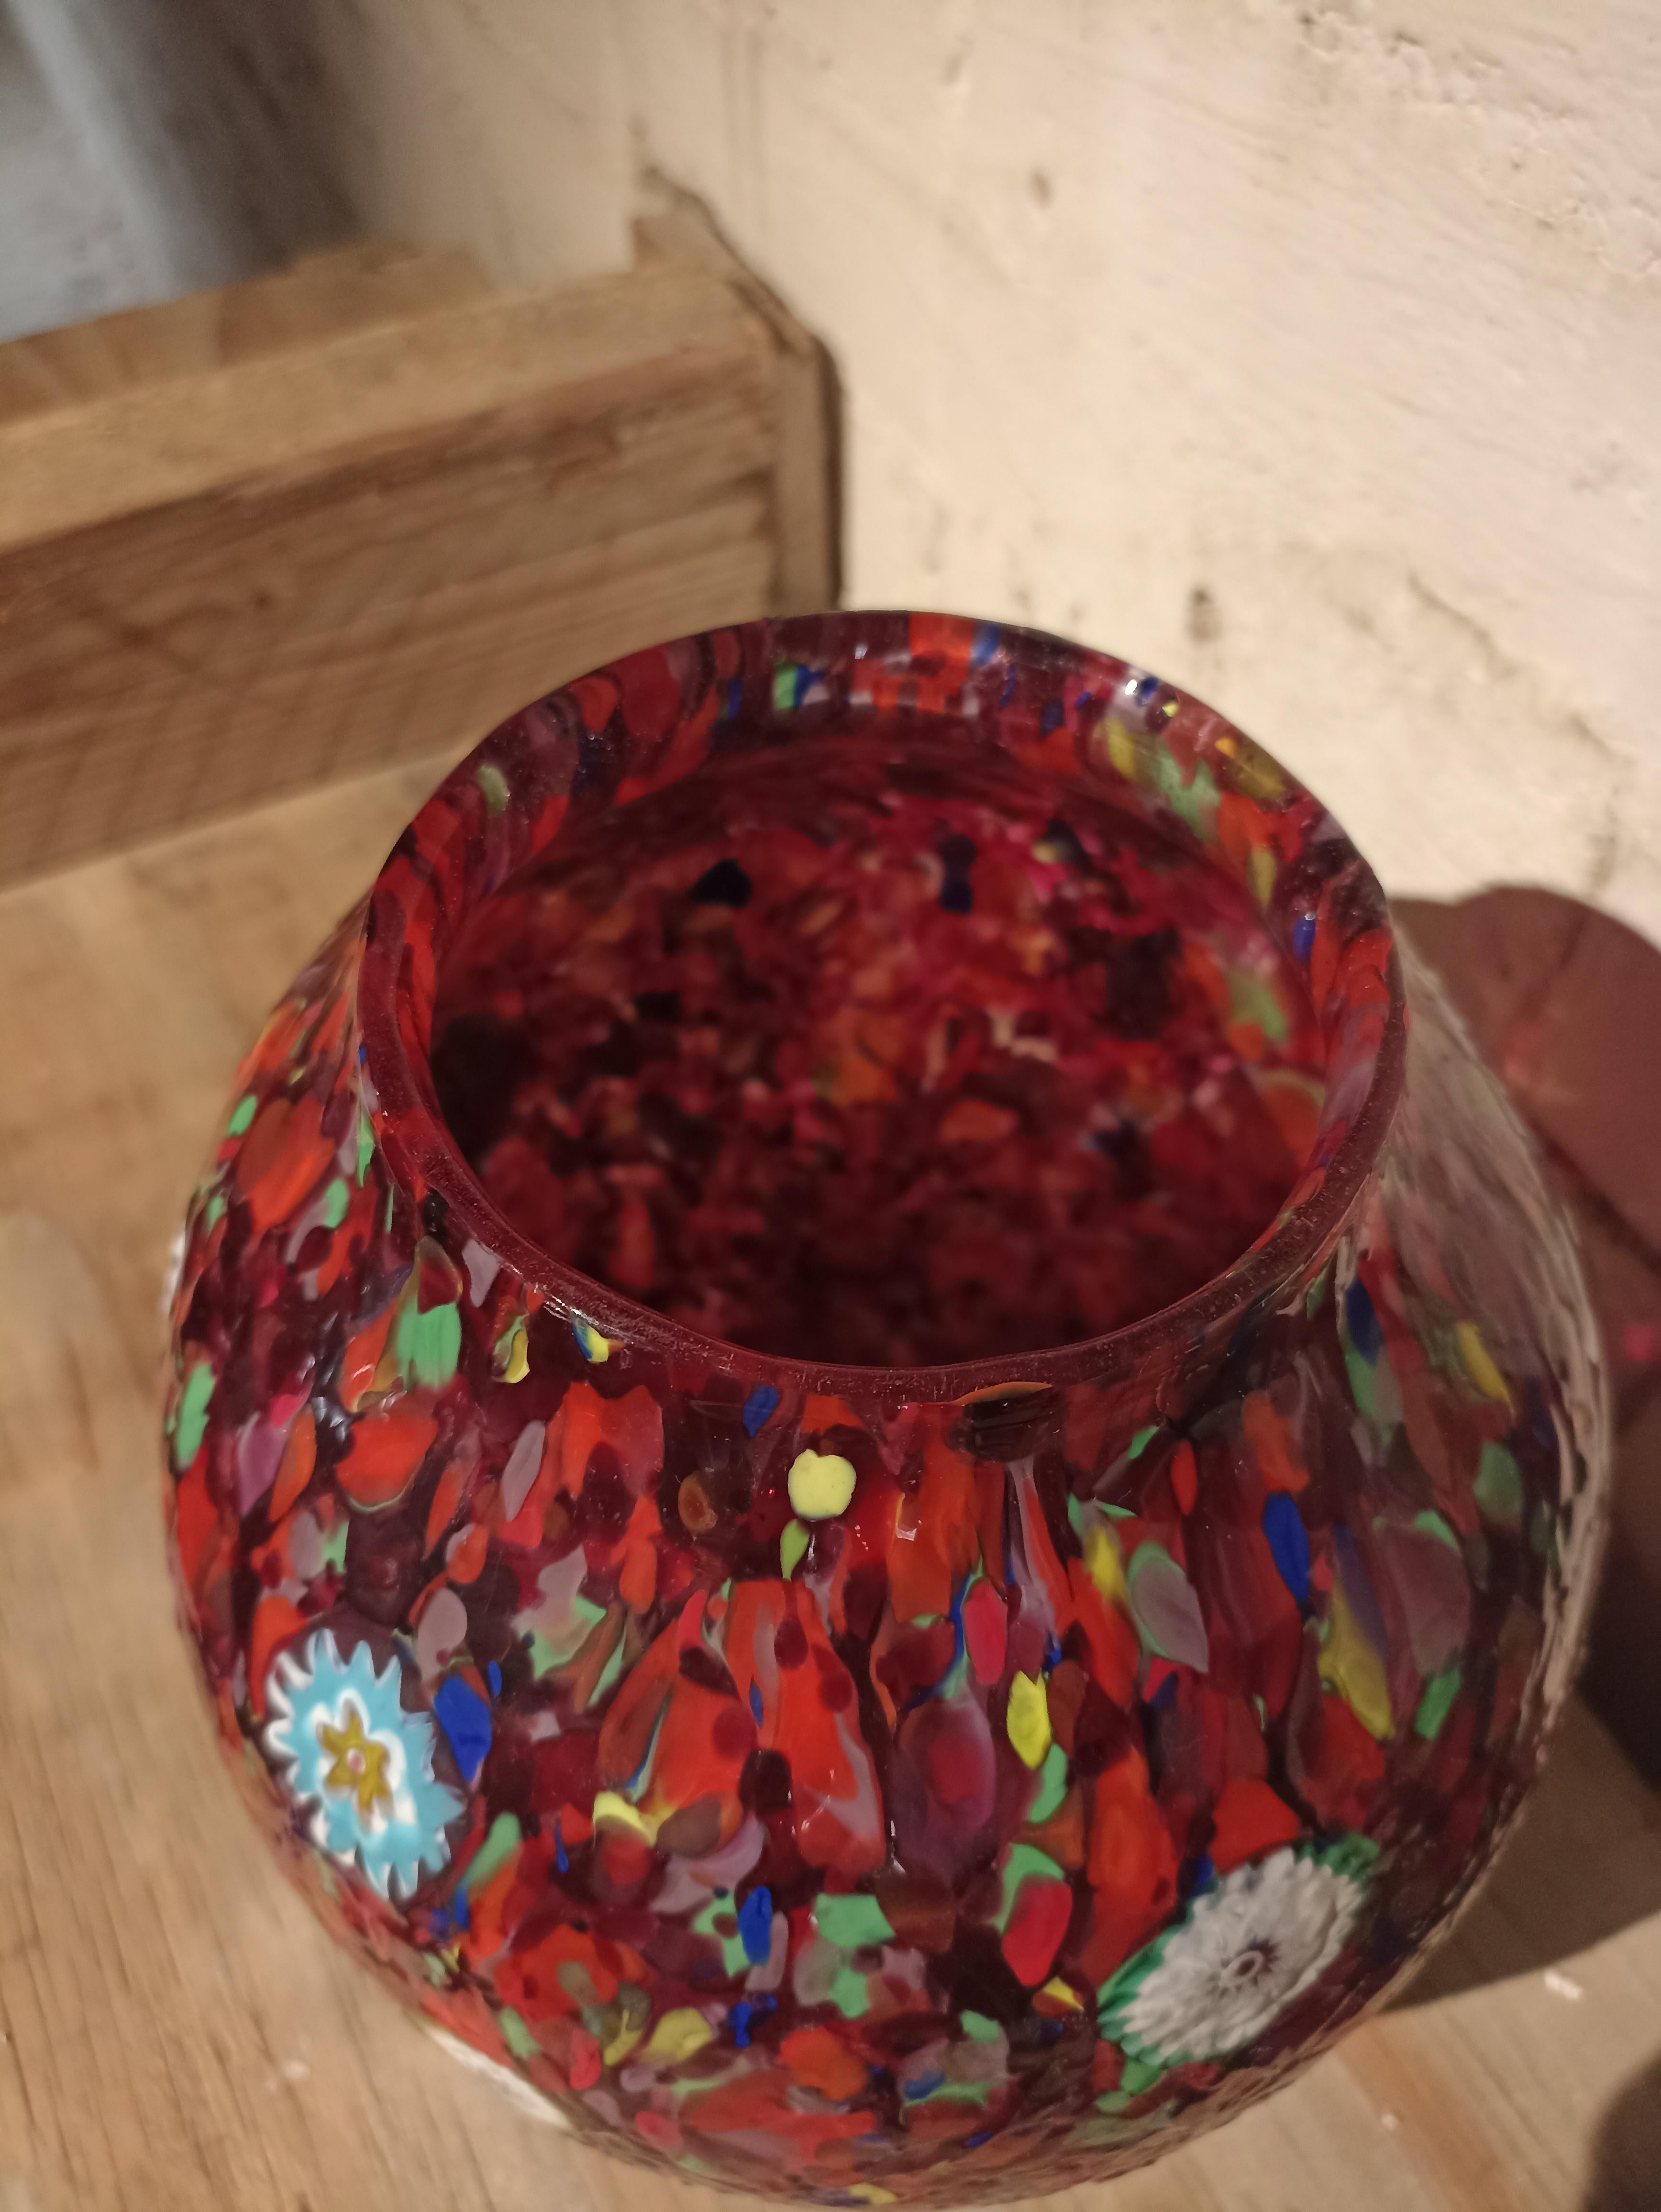 Voici l'exquis vase MARMORINO, un véritable chef-d'œuvre fabriqué par la célèbre verrerie Fratelli Toso à Murano, en Italie. Ce design original de 1955 présente une surface de couleur unie avec des teintes intenses qui capturent l'essence de